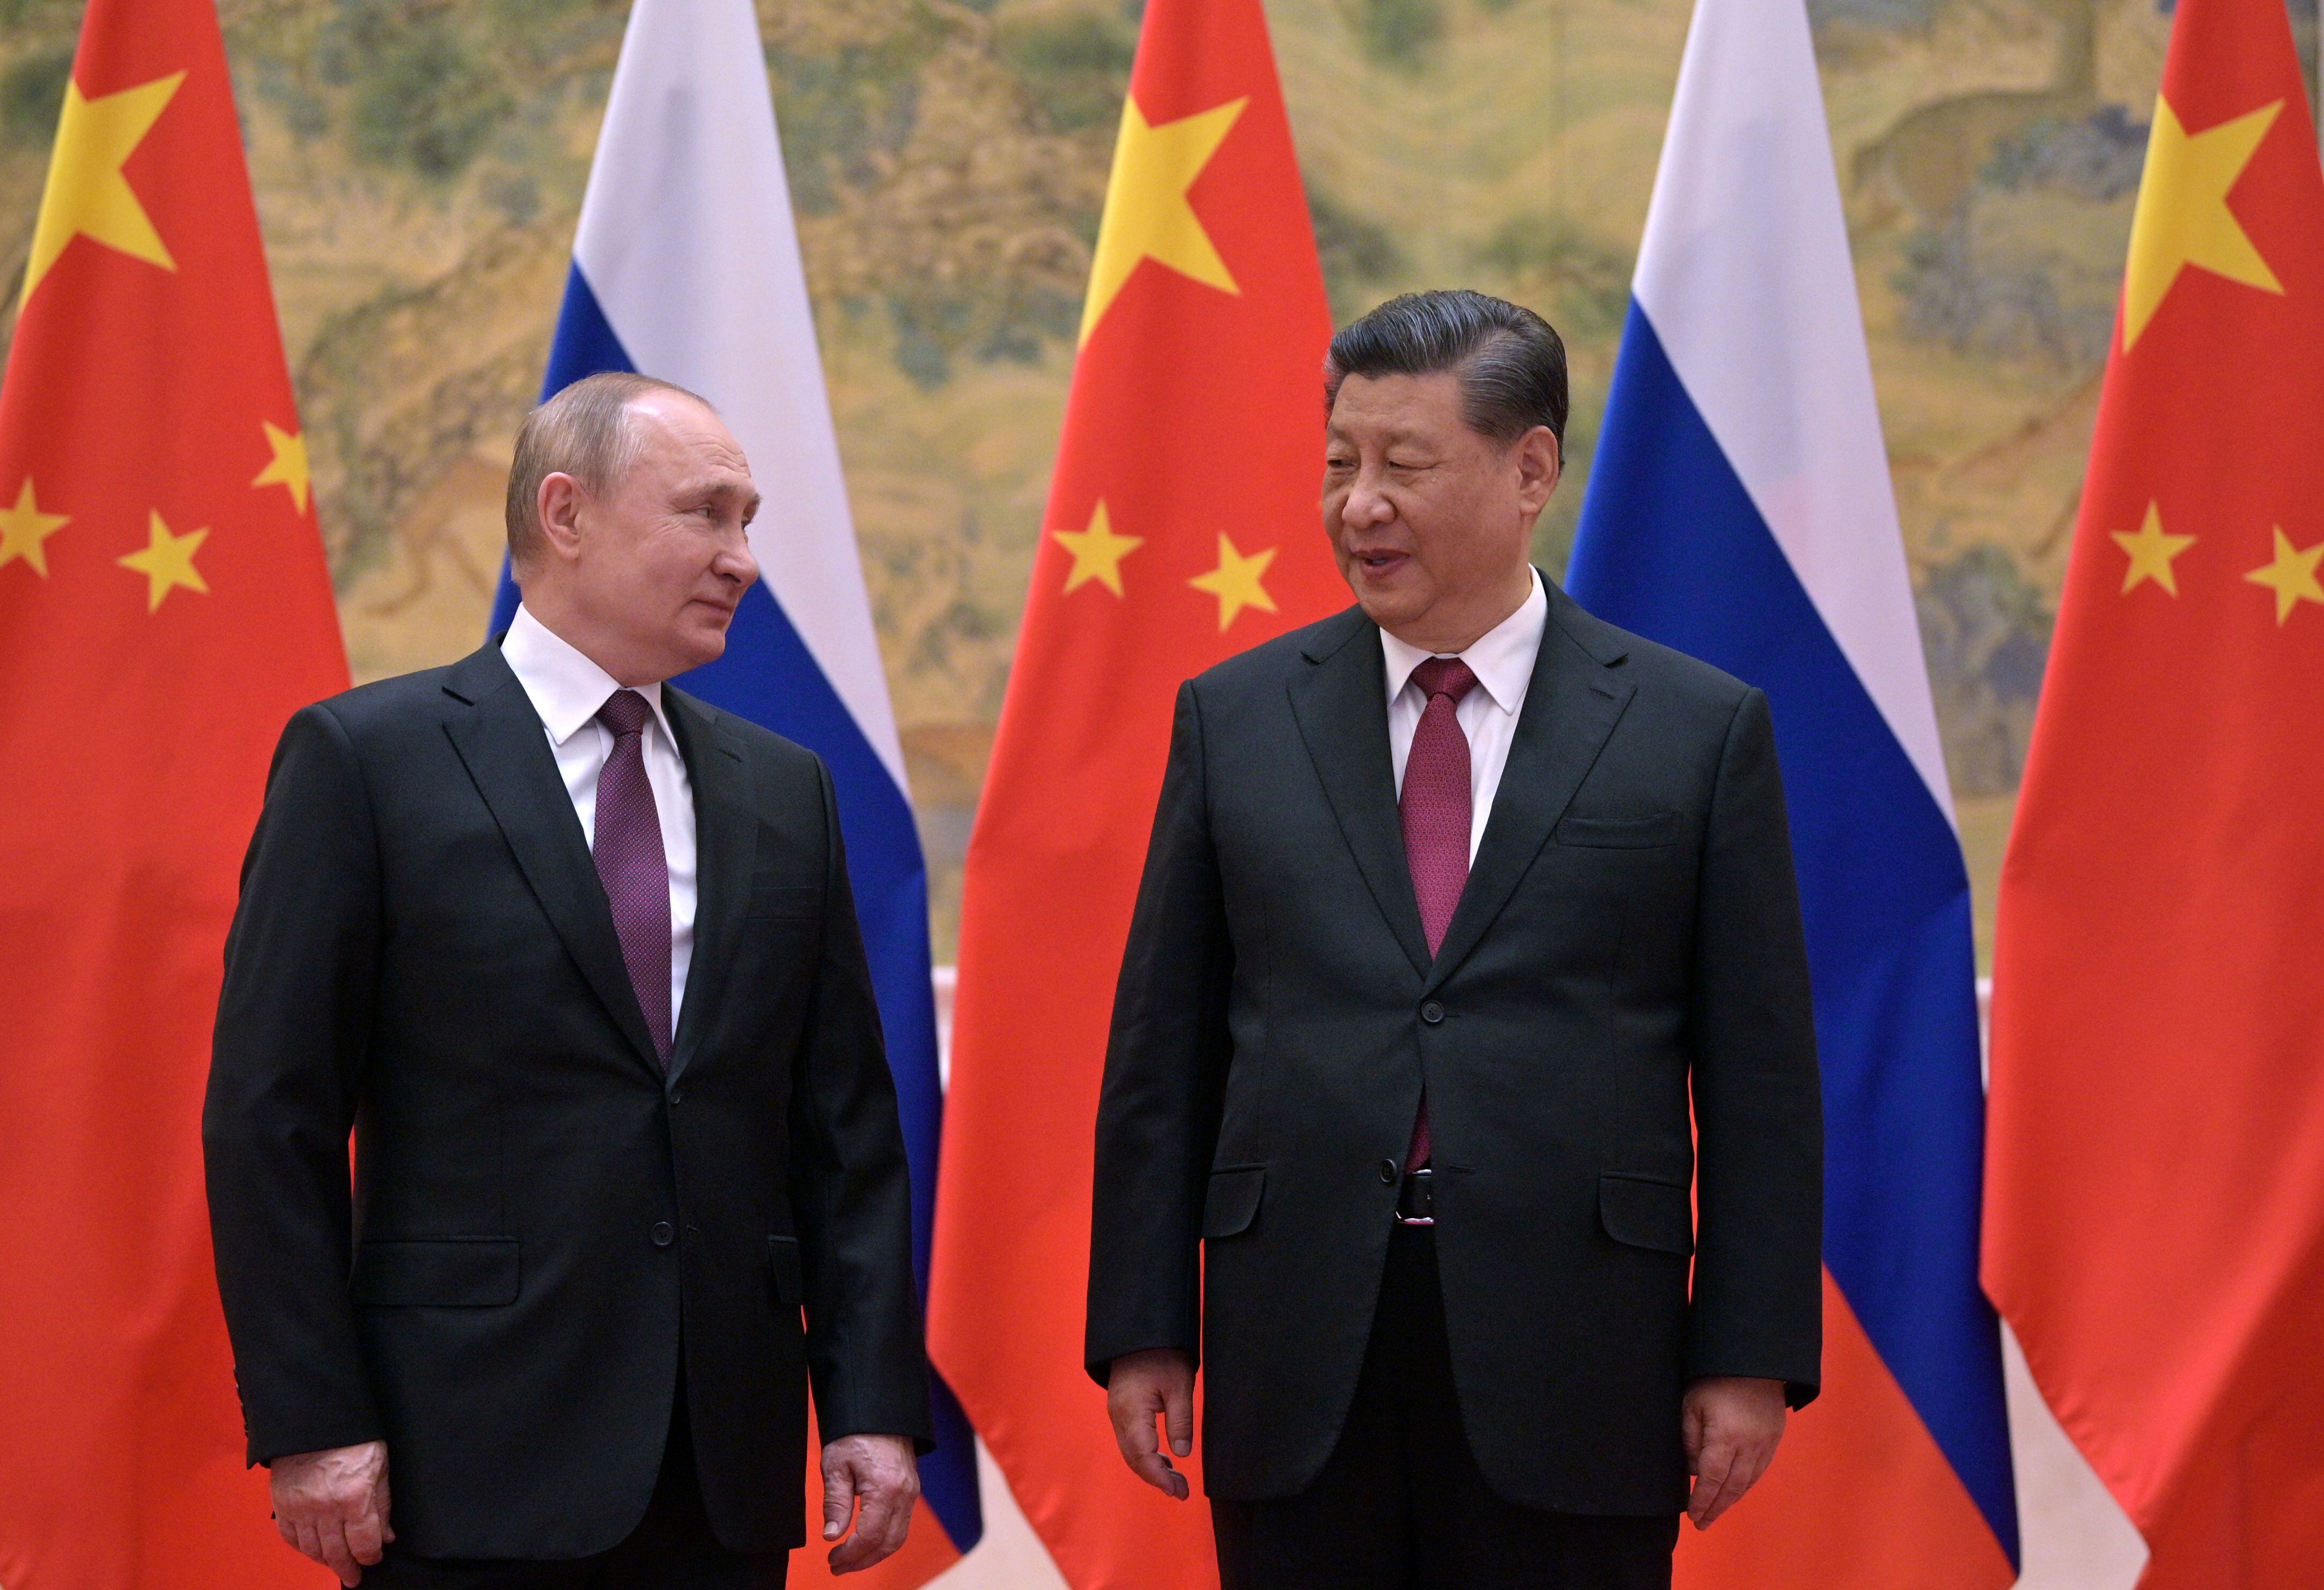 El presidente ruso, Vladímir Putin, (i) y su homólogo chino, Xi Jinping (d) durante su reunión en Pekín el pasado 4 de febrero. EFE/EPA/ALEXEI DRUZHININ / KREMLIN / SPUTNIK / POOL 